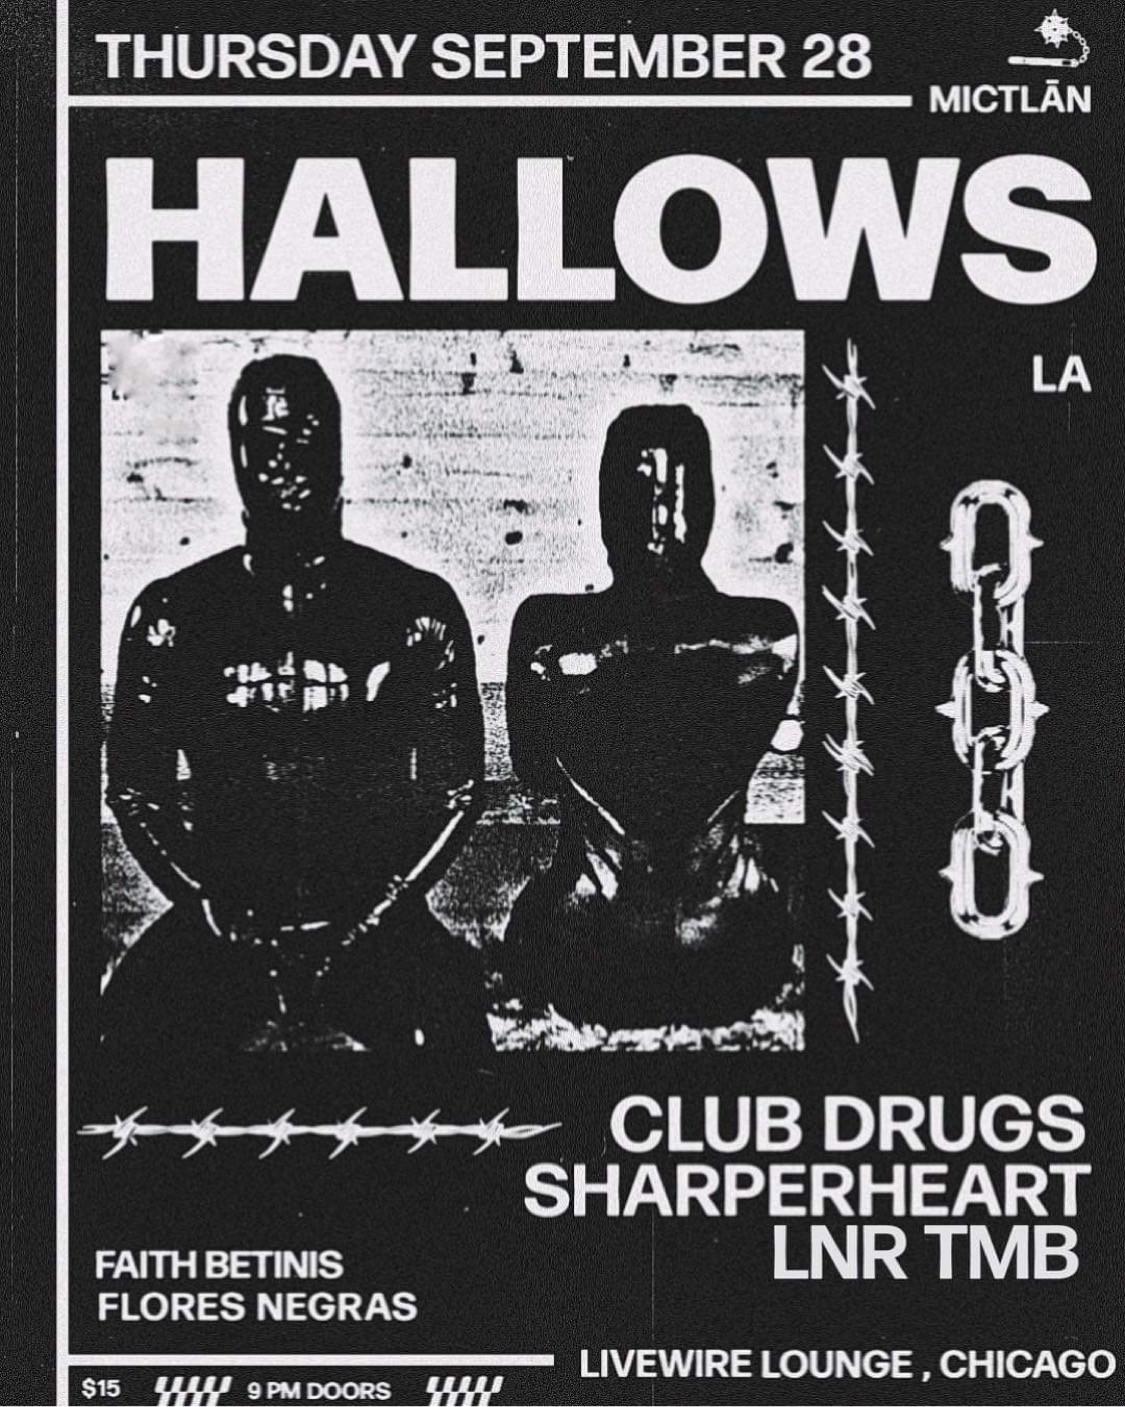 Hallows / Club Drugs/ LNR Tmb / Sharperheart